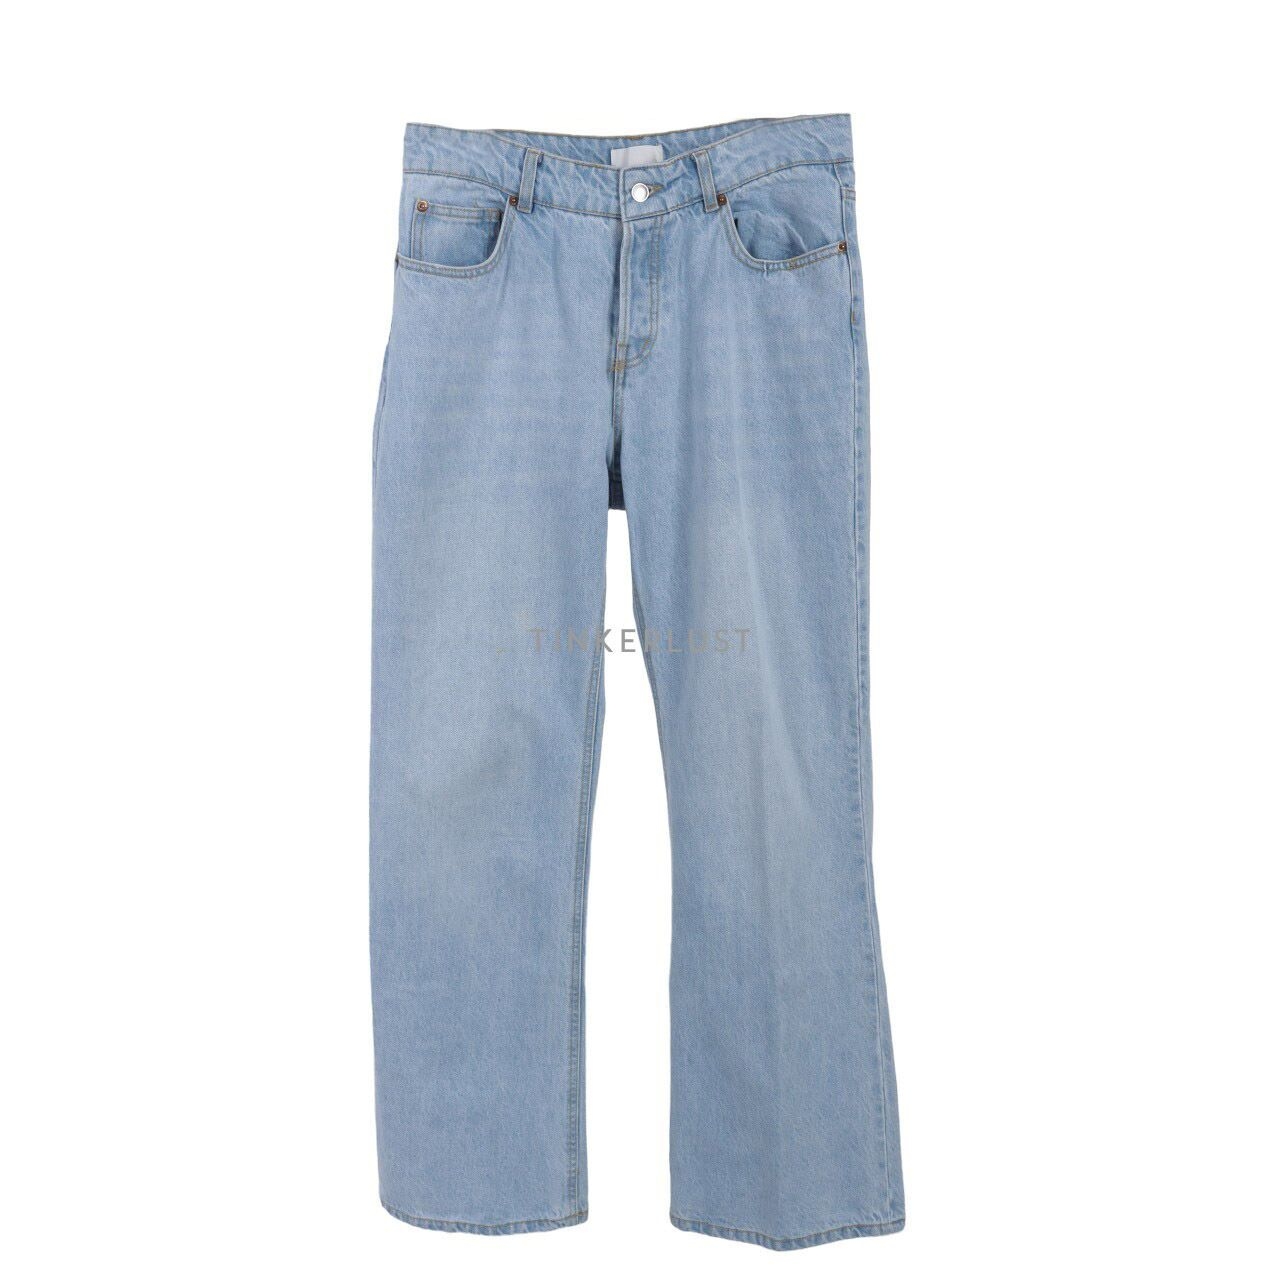 H&M Blue Jeans Long Pants